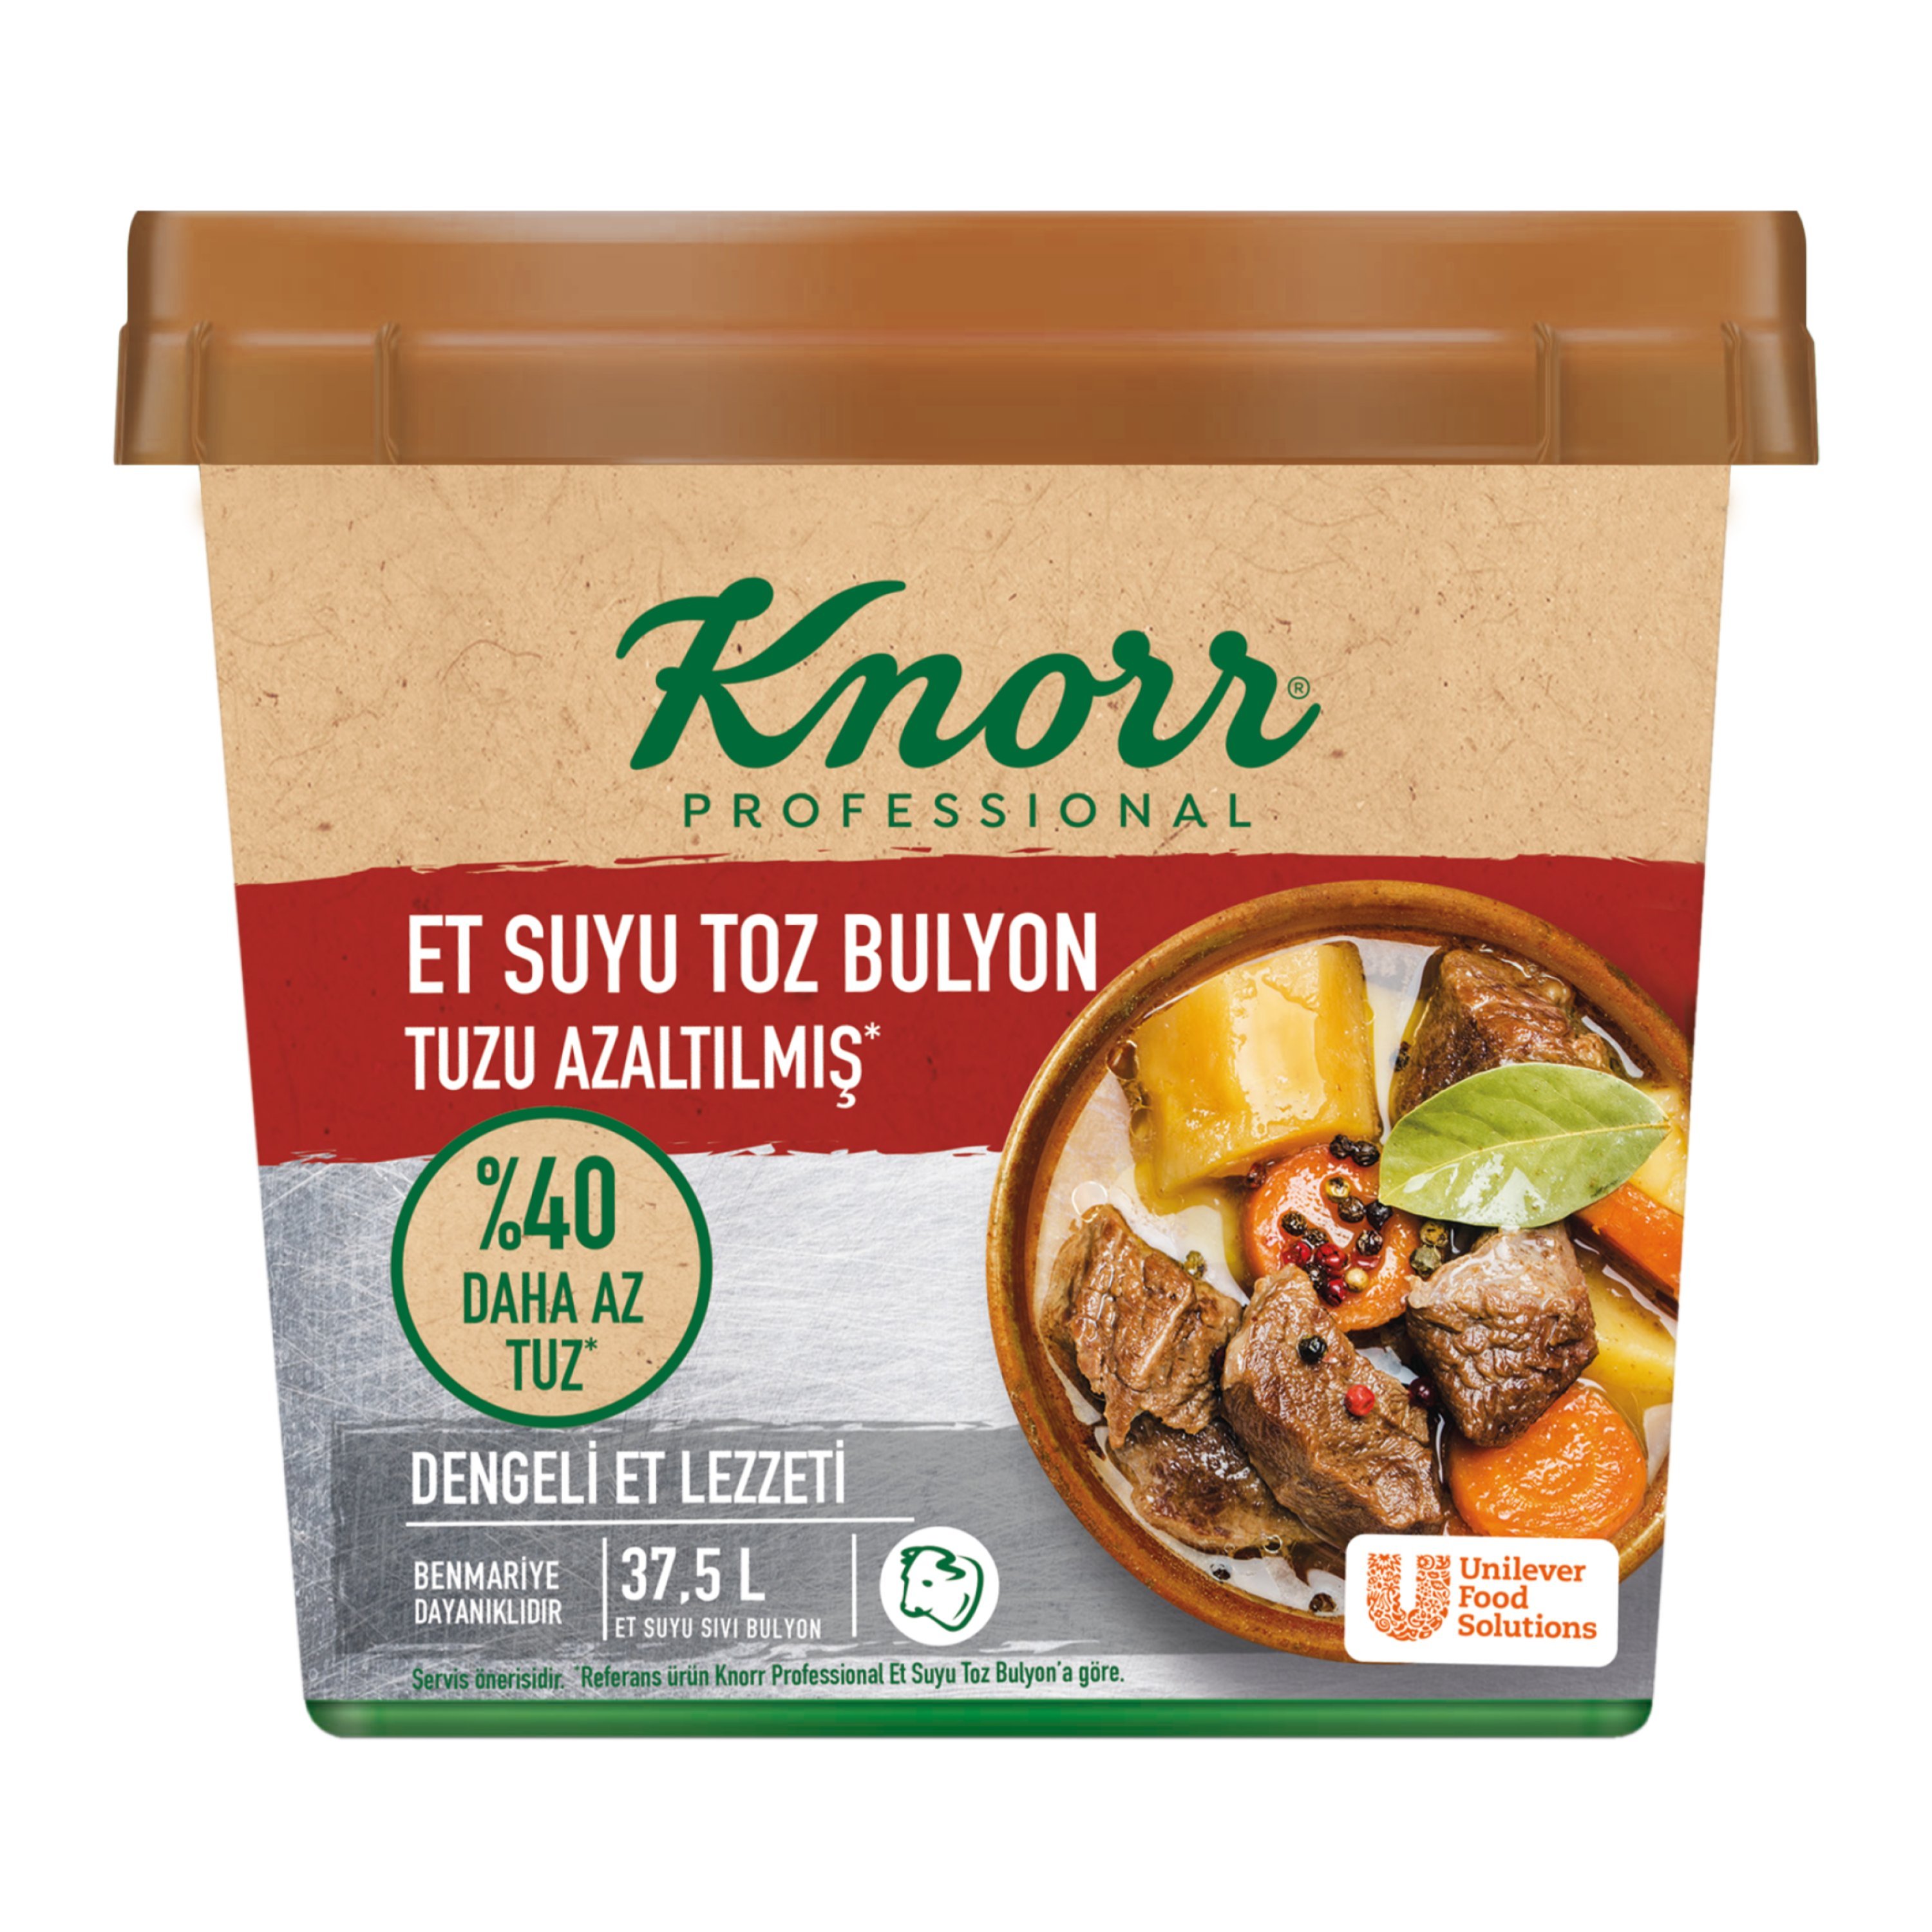 Knorr Tuzu Azaltılmış Et Bulyon 750 g - 